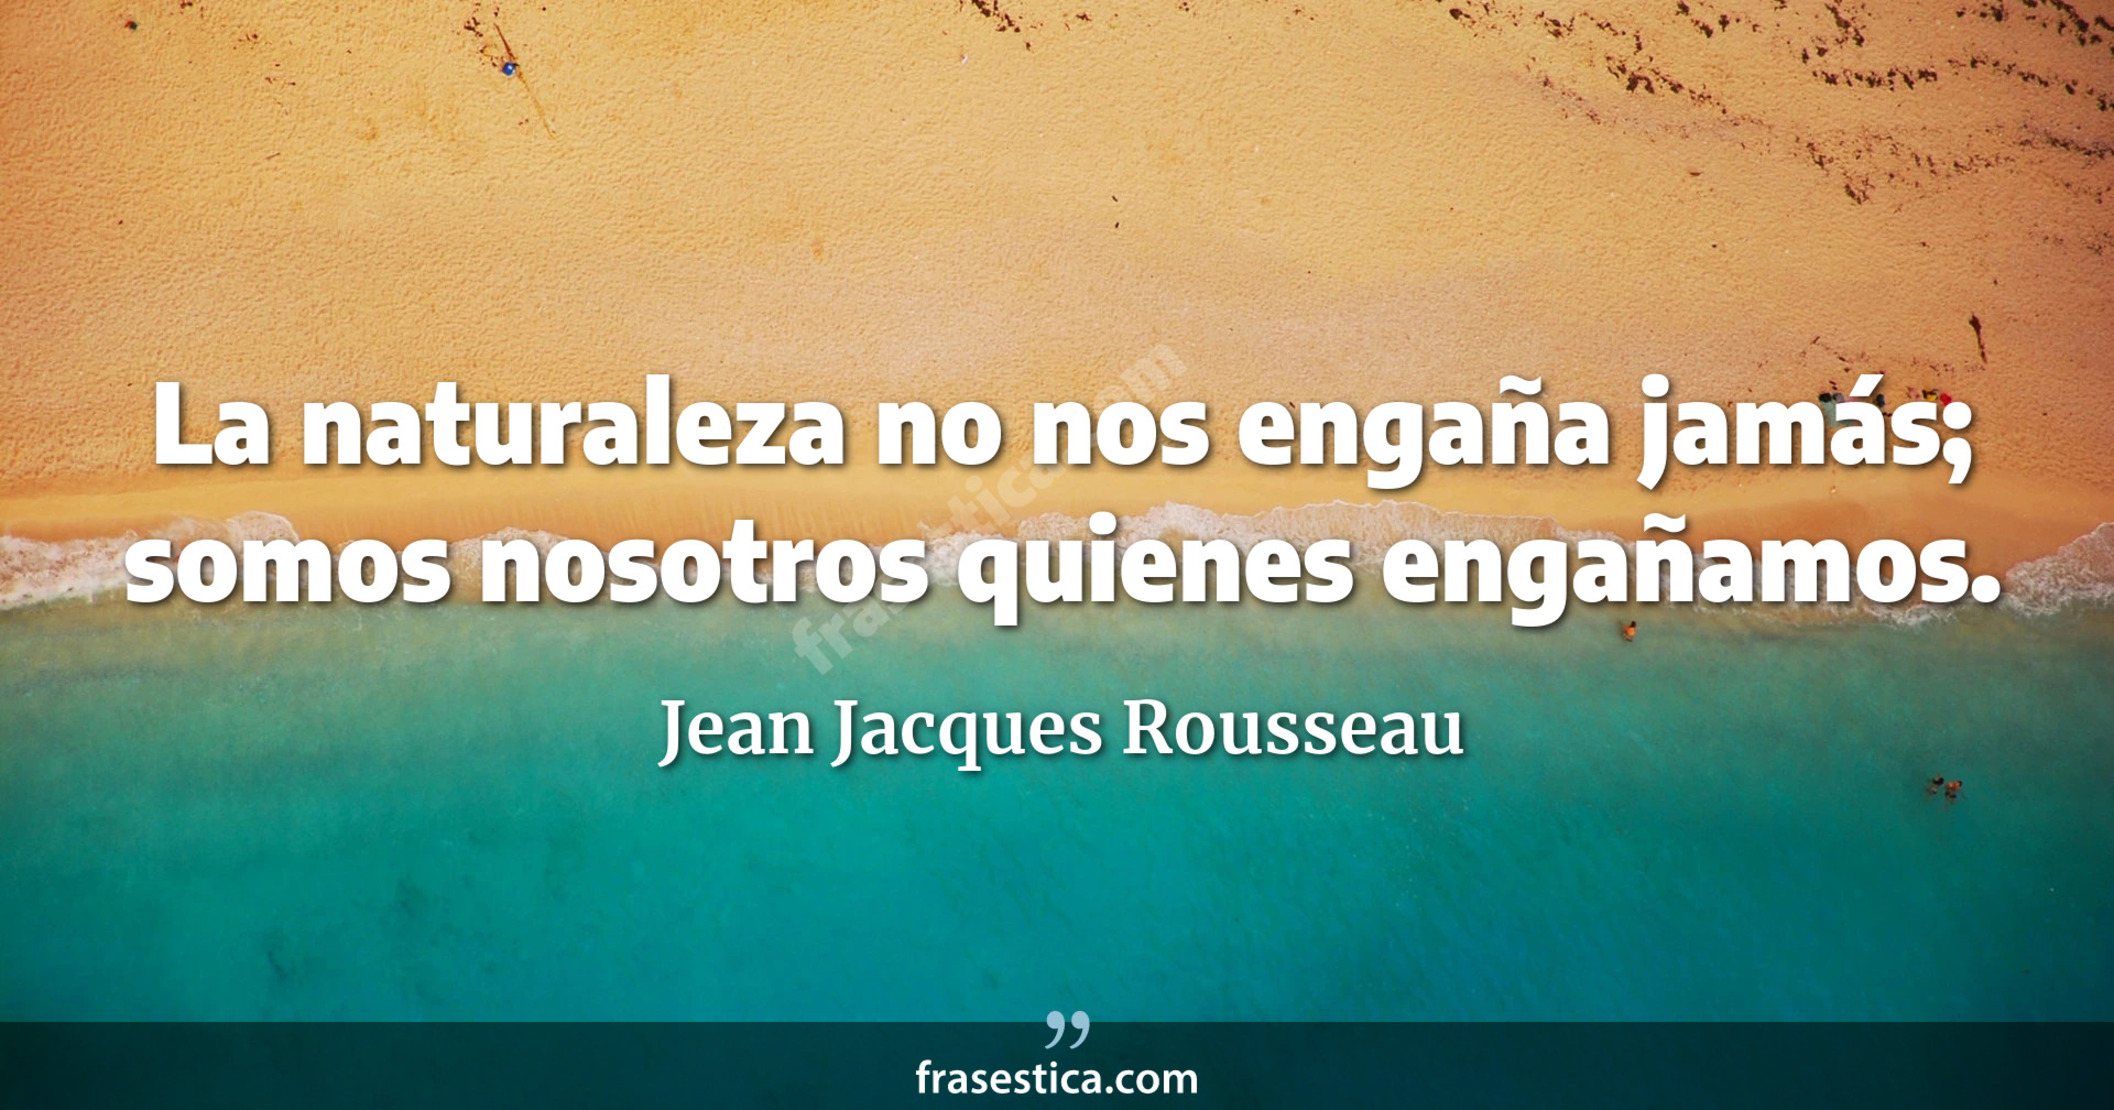 La naturaleza no nos engaña jamás; somos nosotros quienes engañamos. - Jean Jacques Rousseau